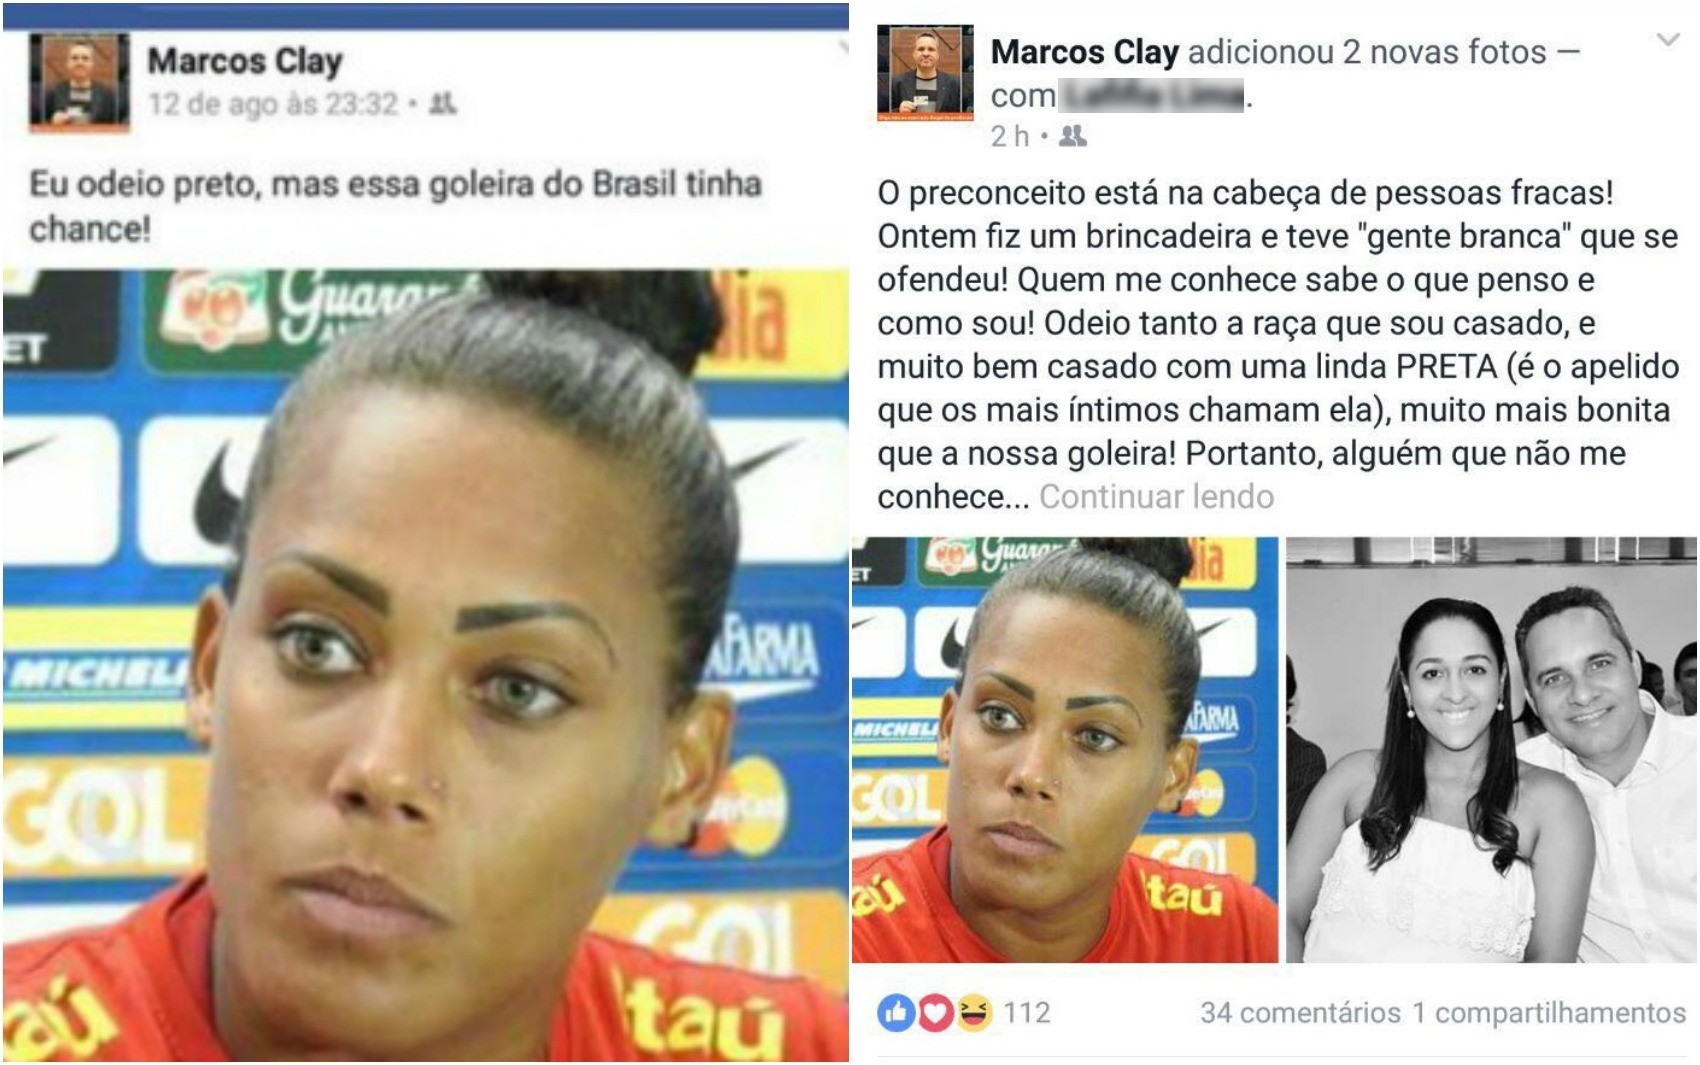 Após polêmica, Marcos Clay se posicionou novamente e depois apagou posts (Foto: Reprodução/Facebook)